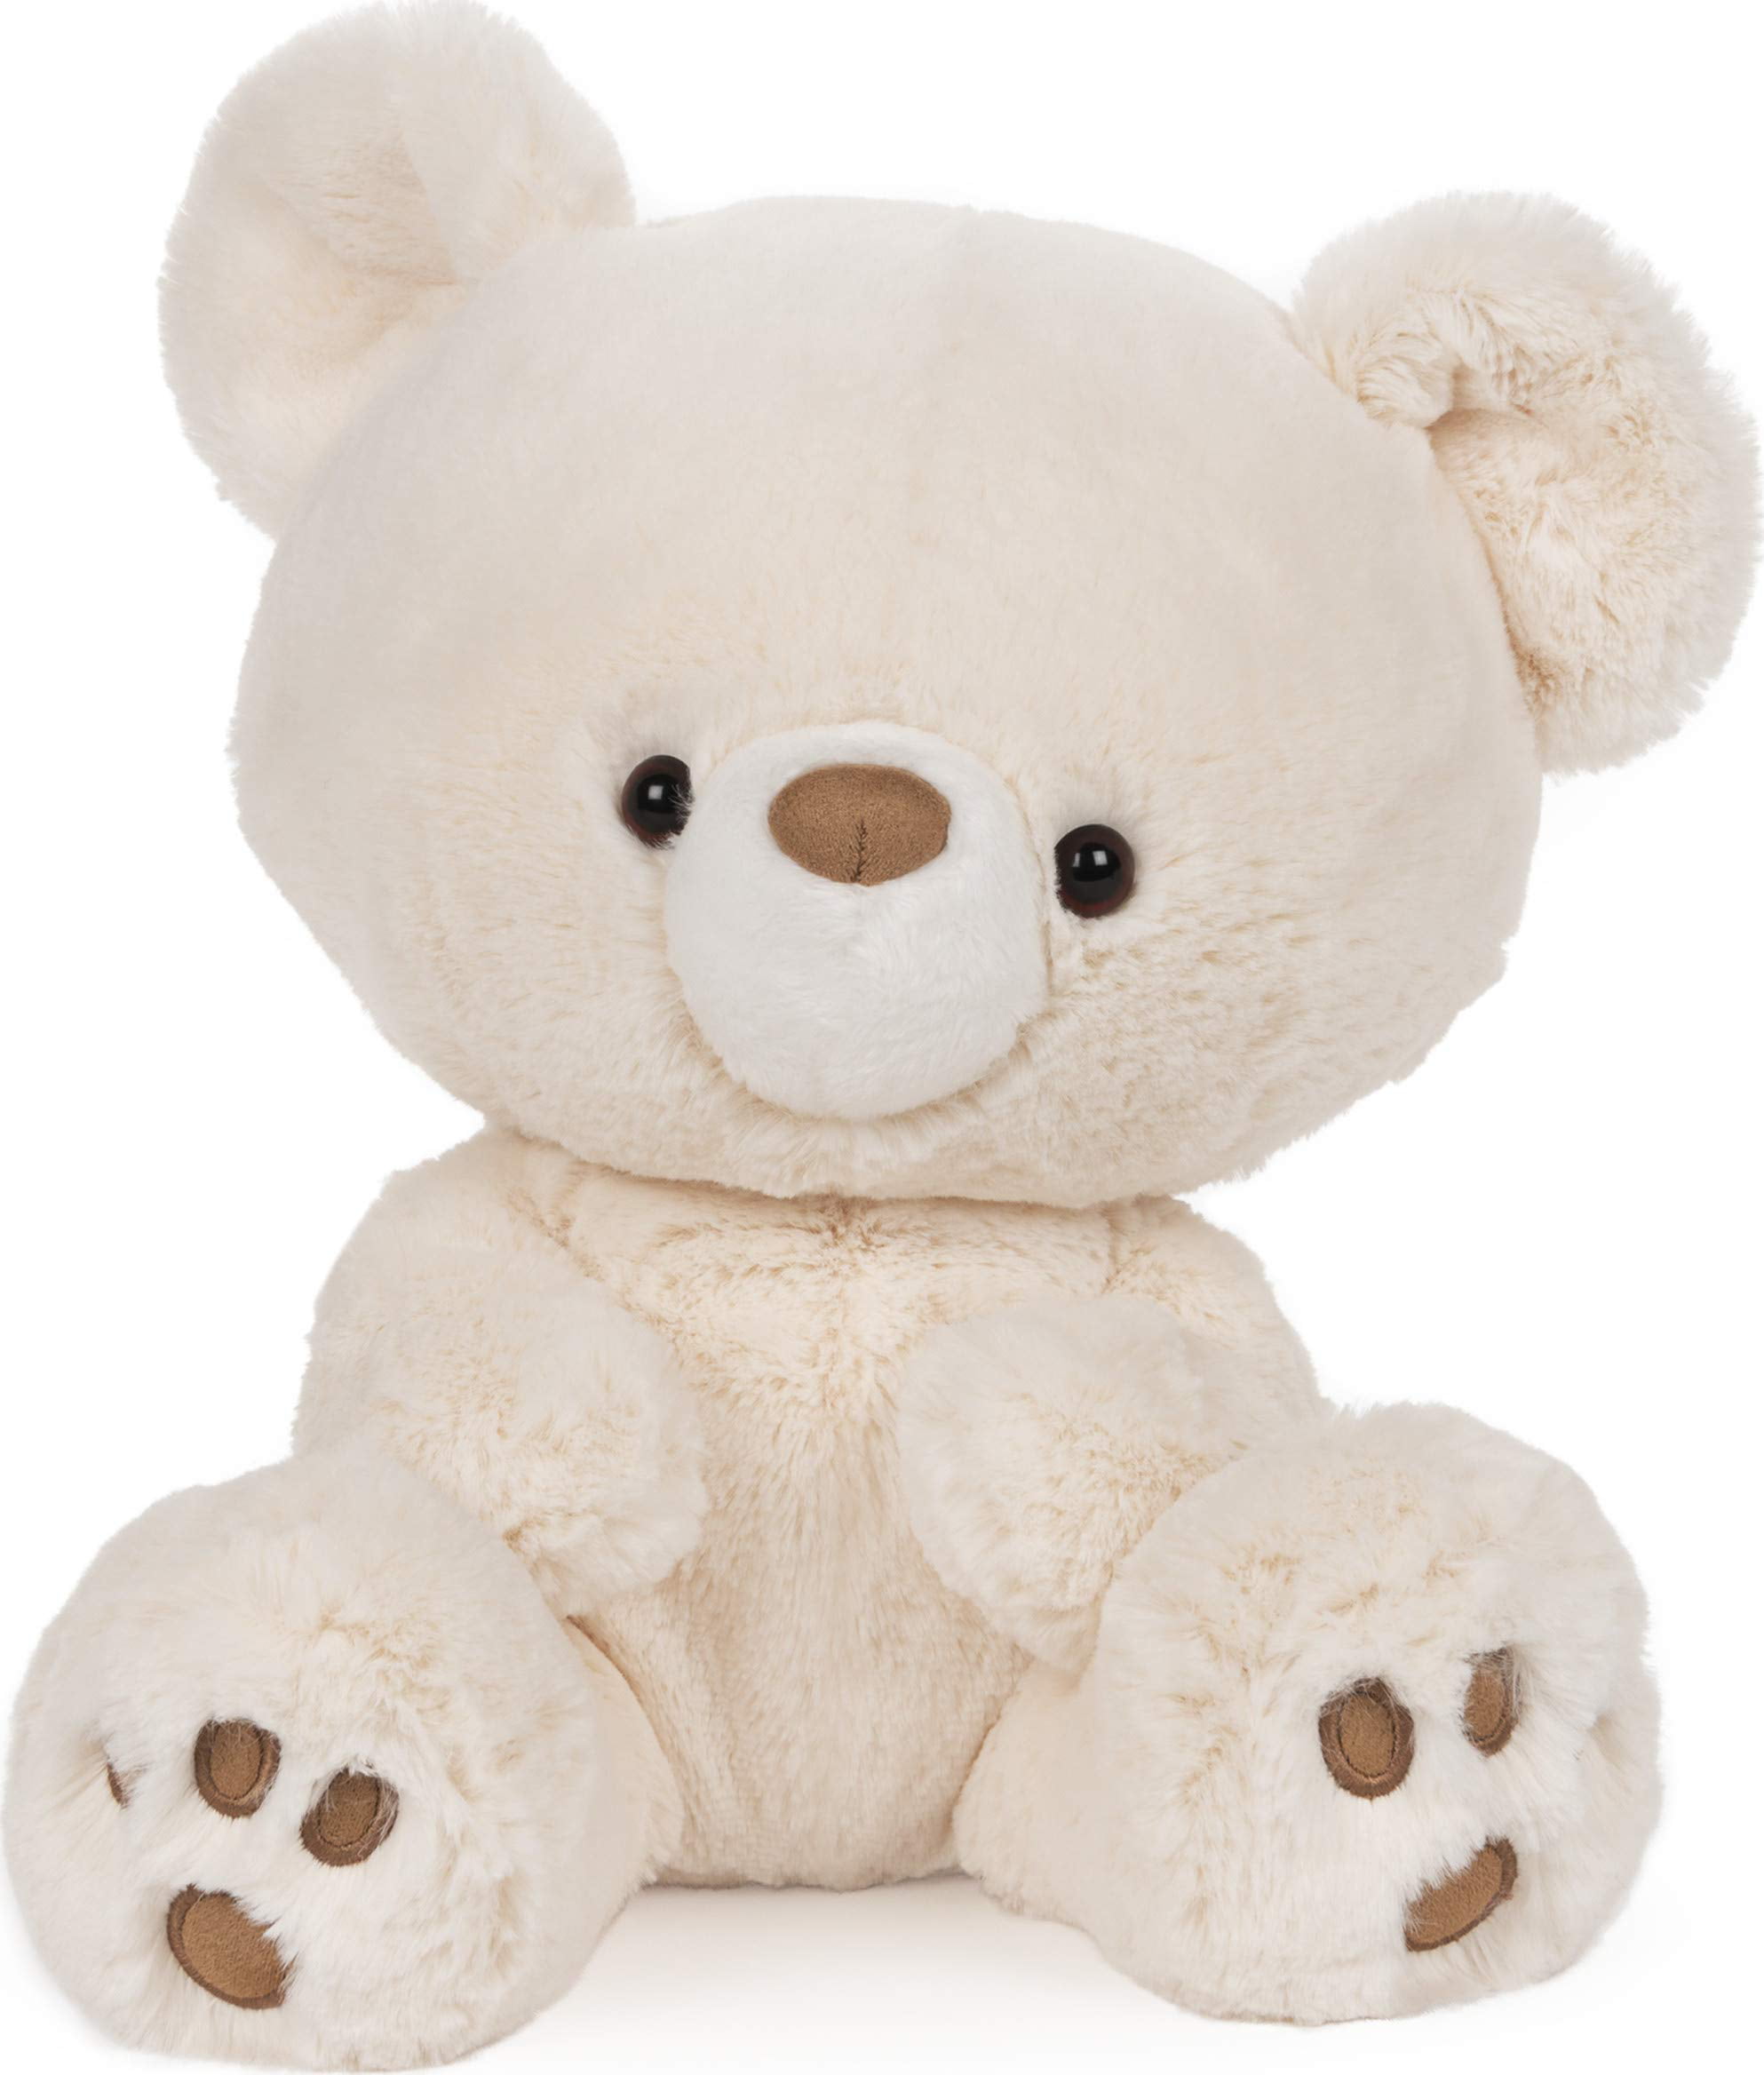 Gund Cuddly Soft Toy & Comforter Animals Bears Dog 